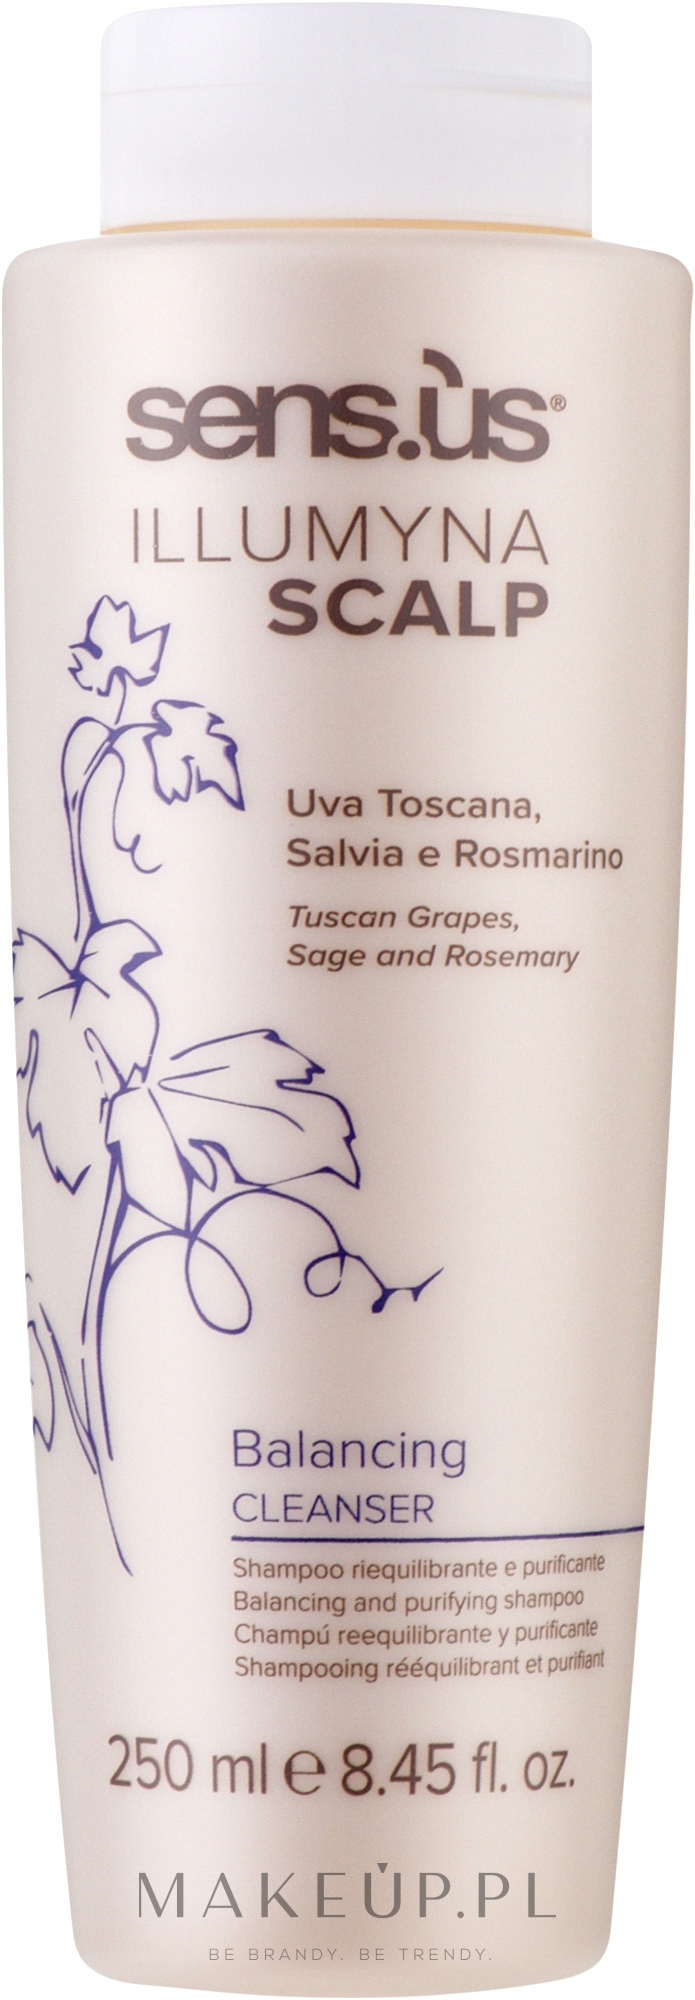 Szampon oczyszczający do włosów - Sensus Illumyna Scalp Balancing Cleanser Balancing and Purifying Shampoo — Zdjęcie 250 ml